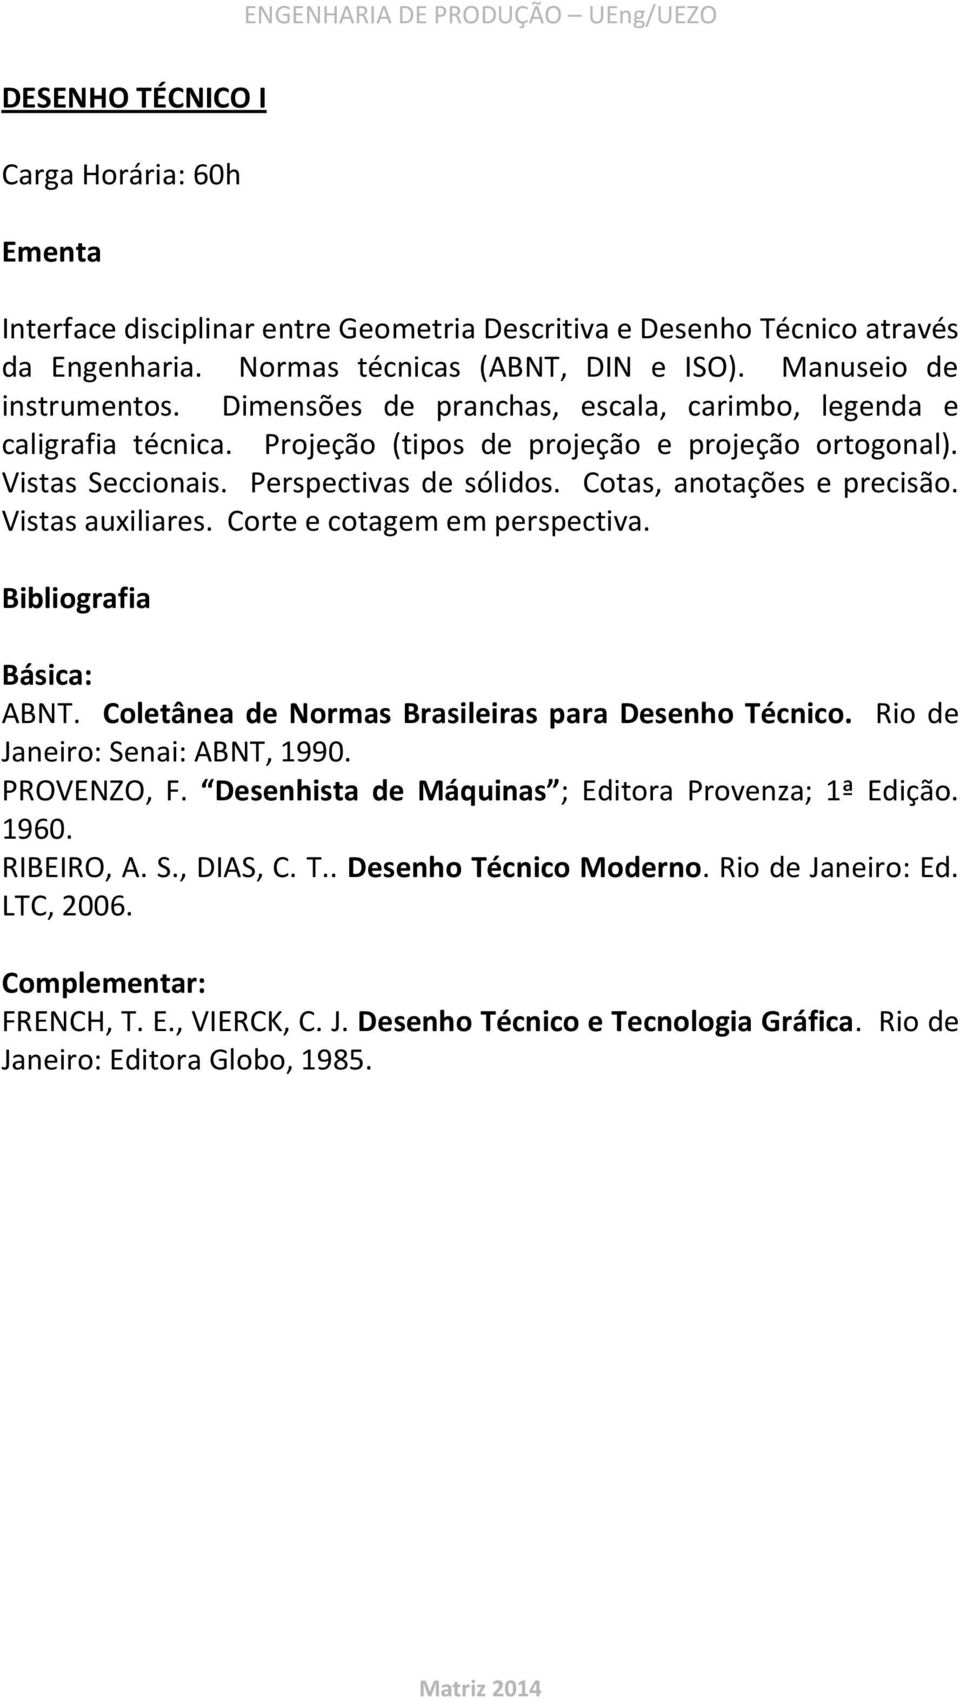 Vistas auxiliares. Corte e cotagem em perspectiva. ABNT. Coletânea de Normas Brasileiras para Desenho Técnico. Rio de Janeiro: Senai: ABNT, 1990. PROVENZO, F.